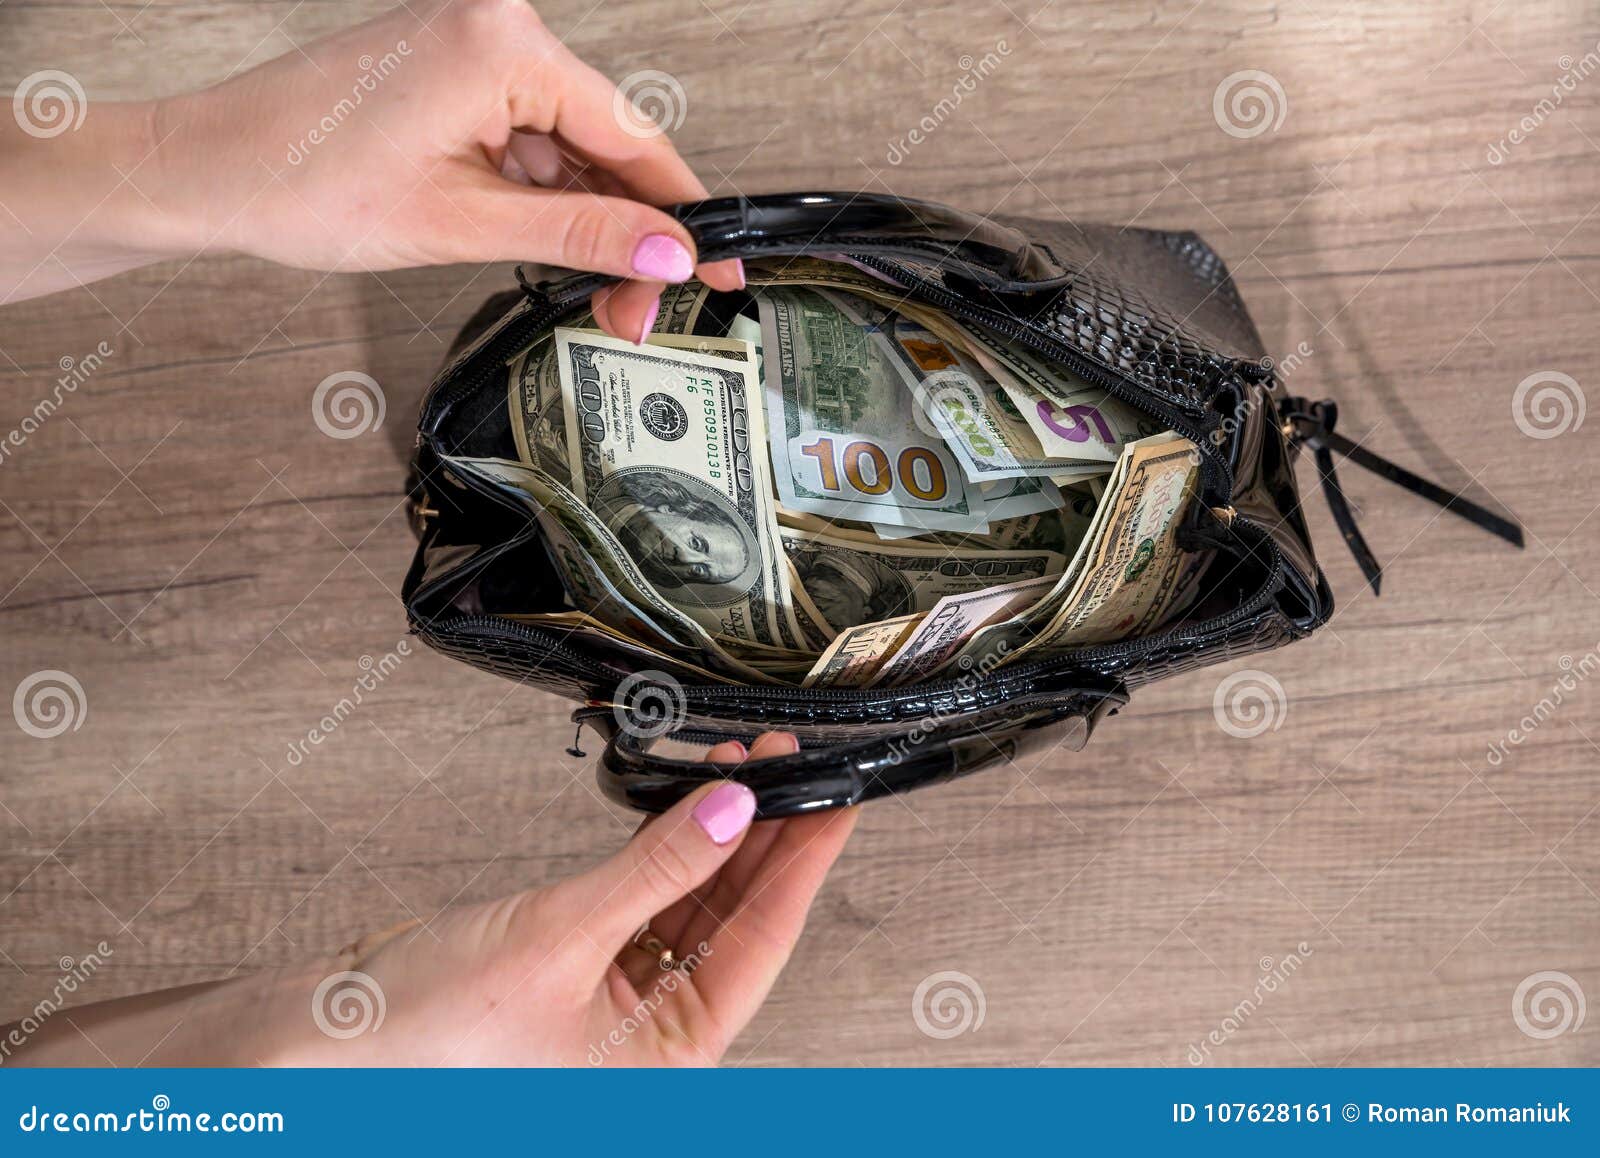 Bags Full Of Money